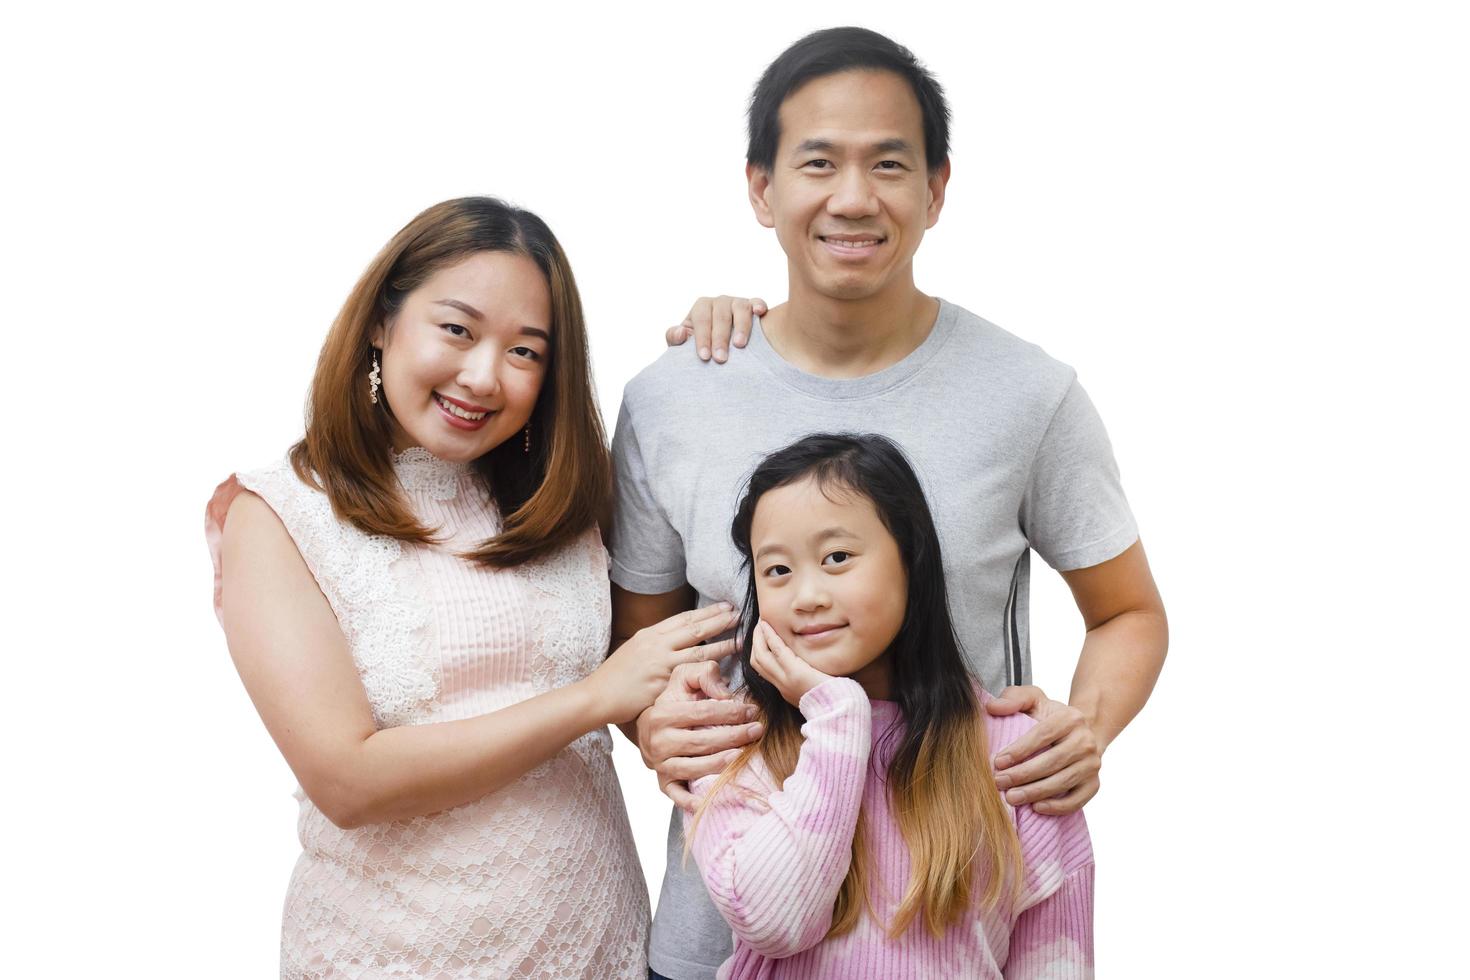 mulher de família asiática e um homem com pequena mulher júnior sorrindo e divertido isolado sobre fundo branco foto